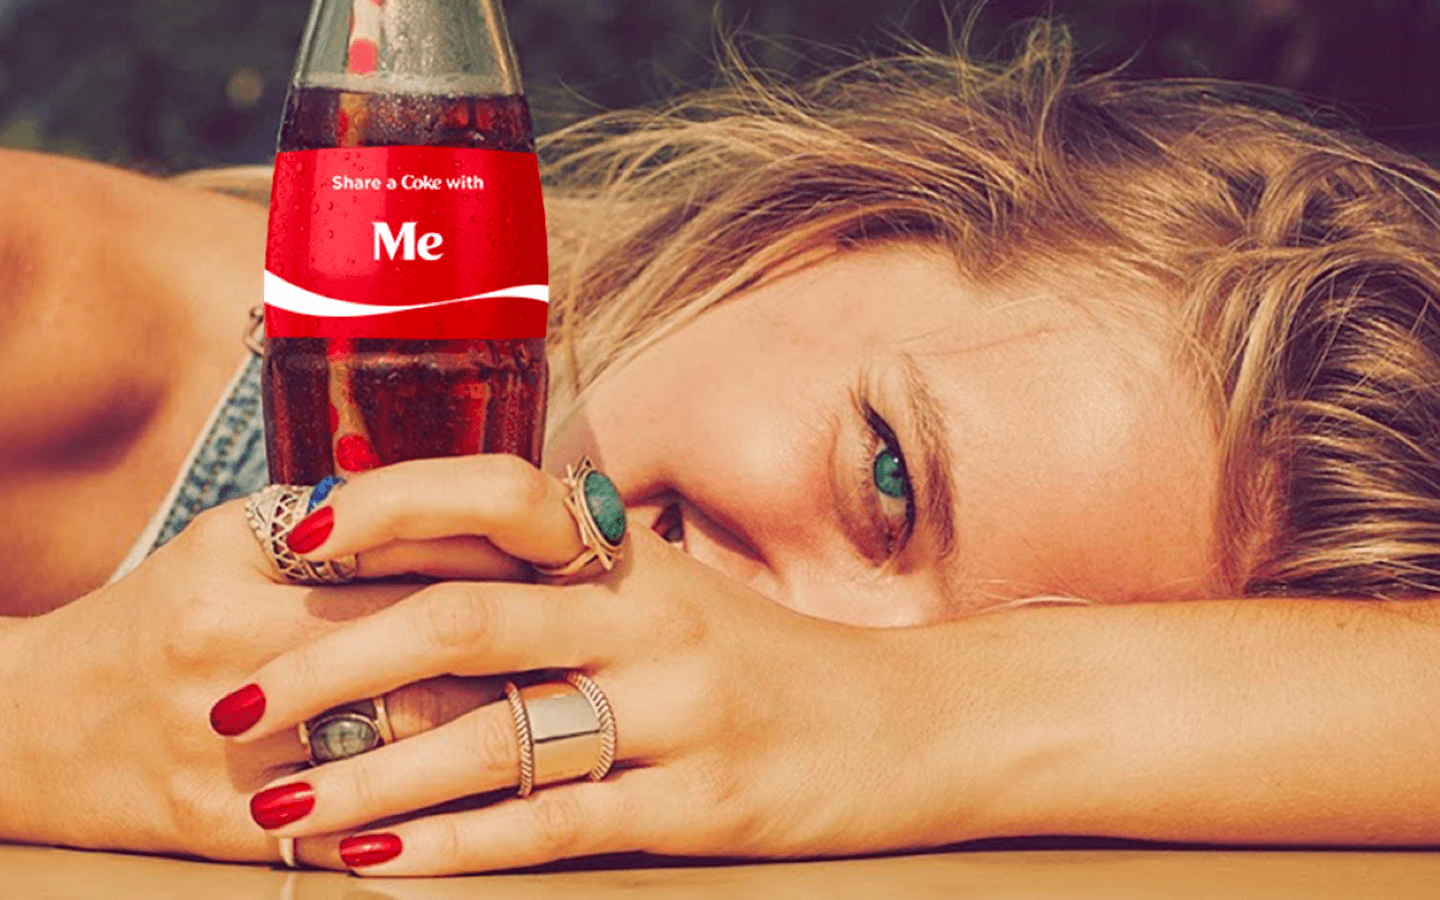 Coke ads